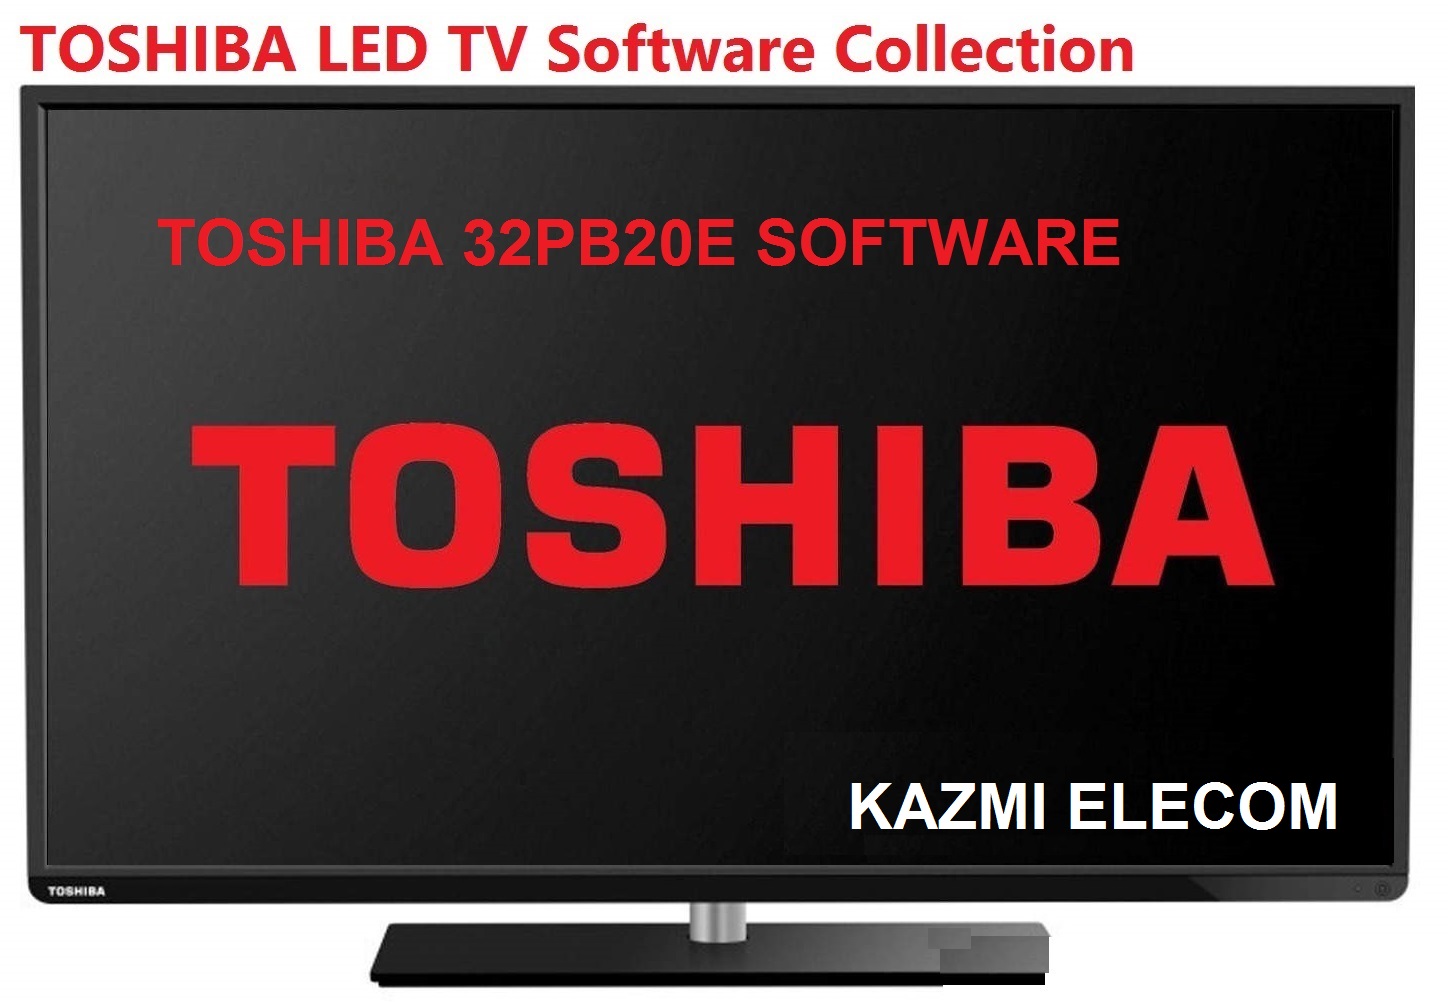 Toshiba 32Pb20E